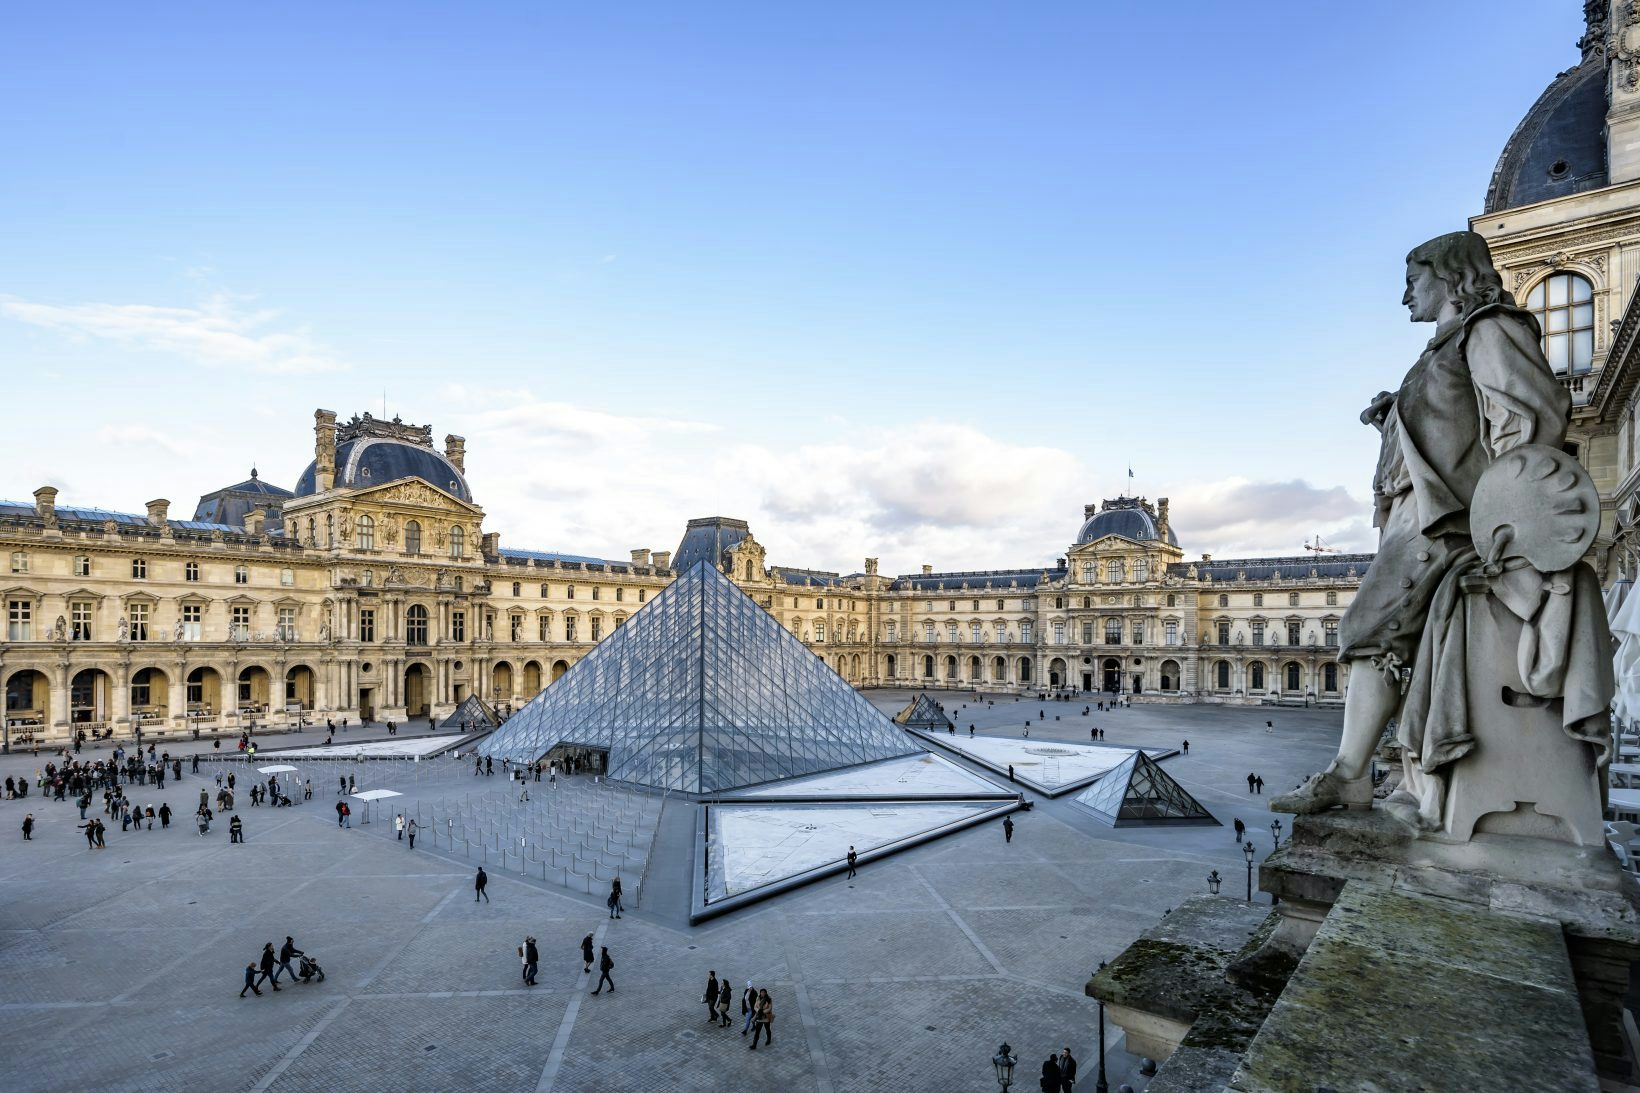 Le dernier luxe? S’offrir le Louvre